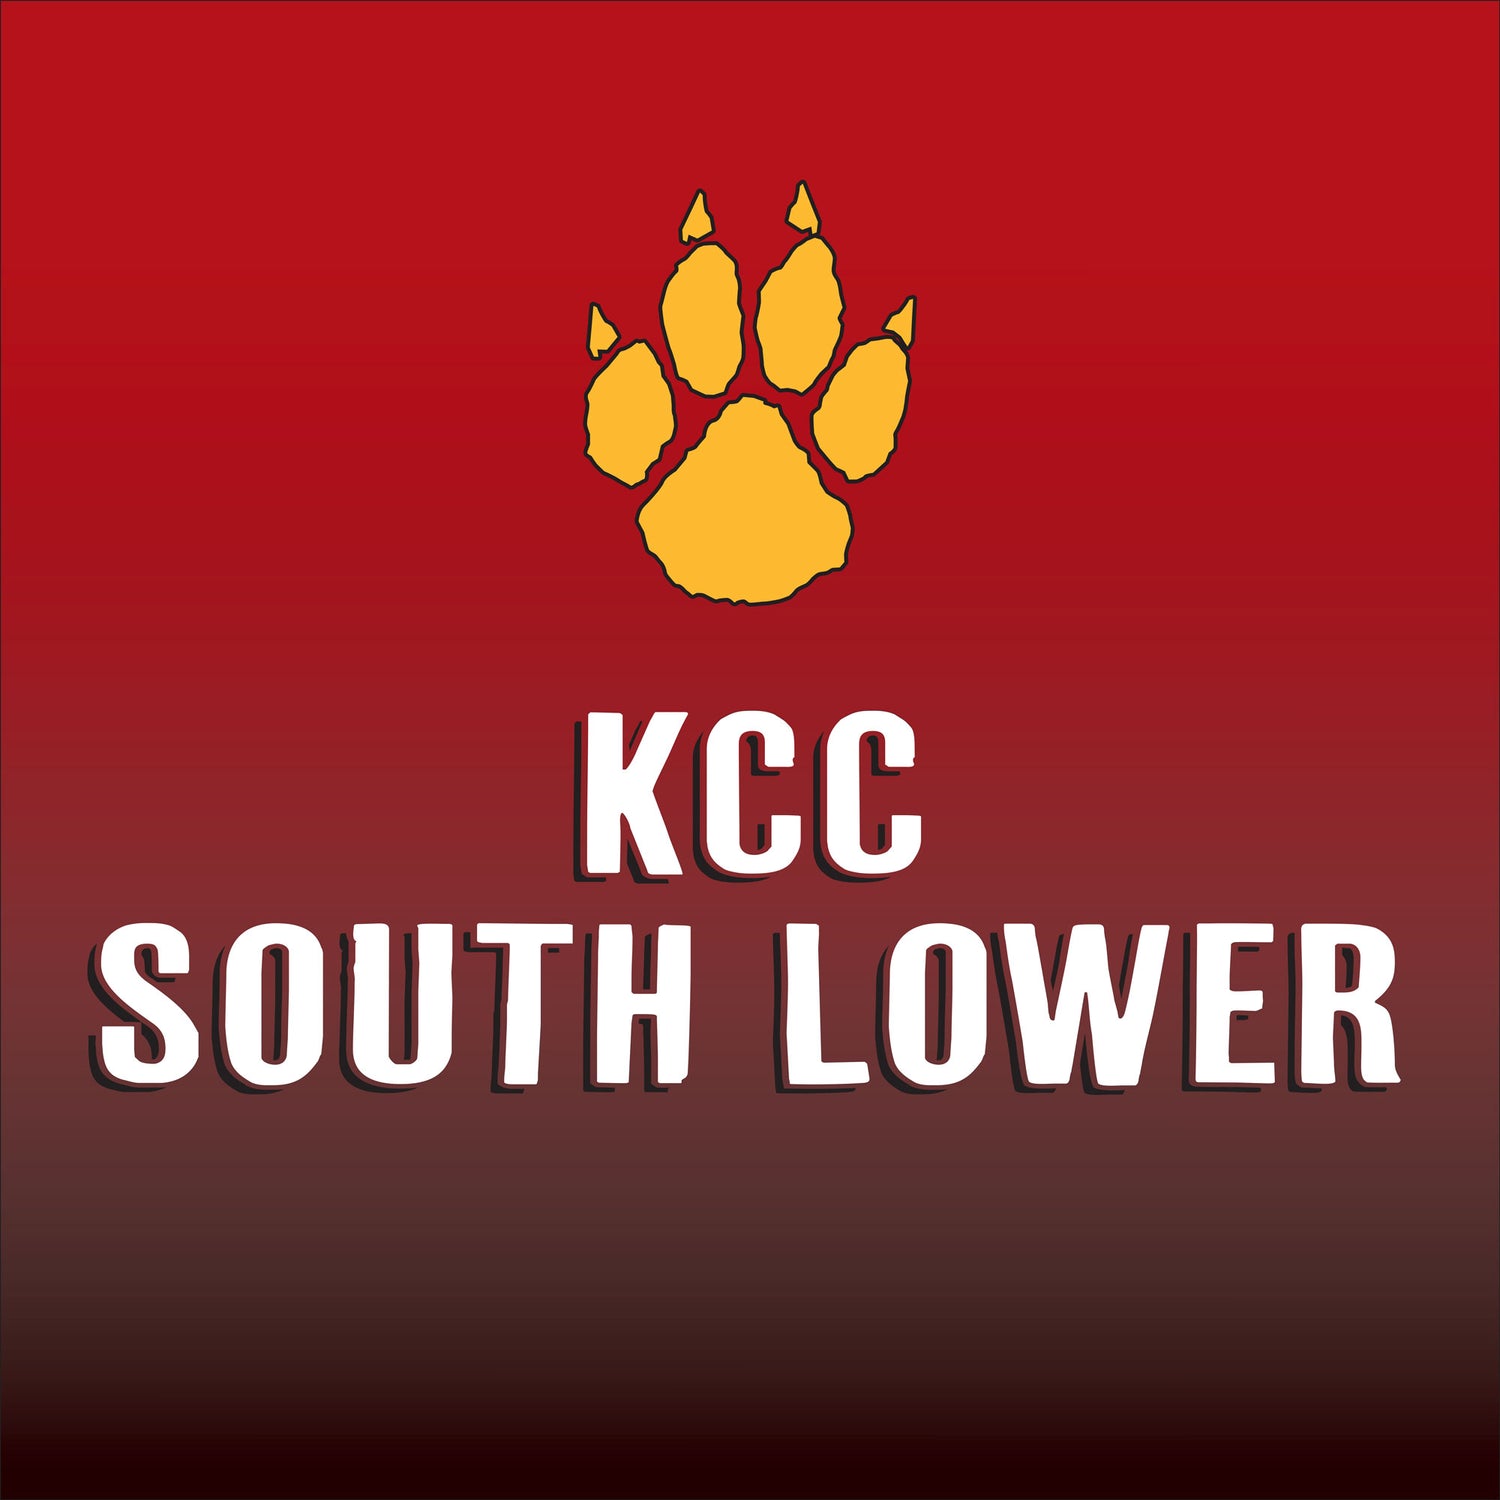 KCC South